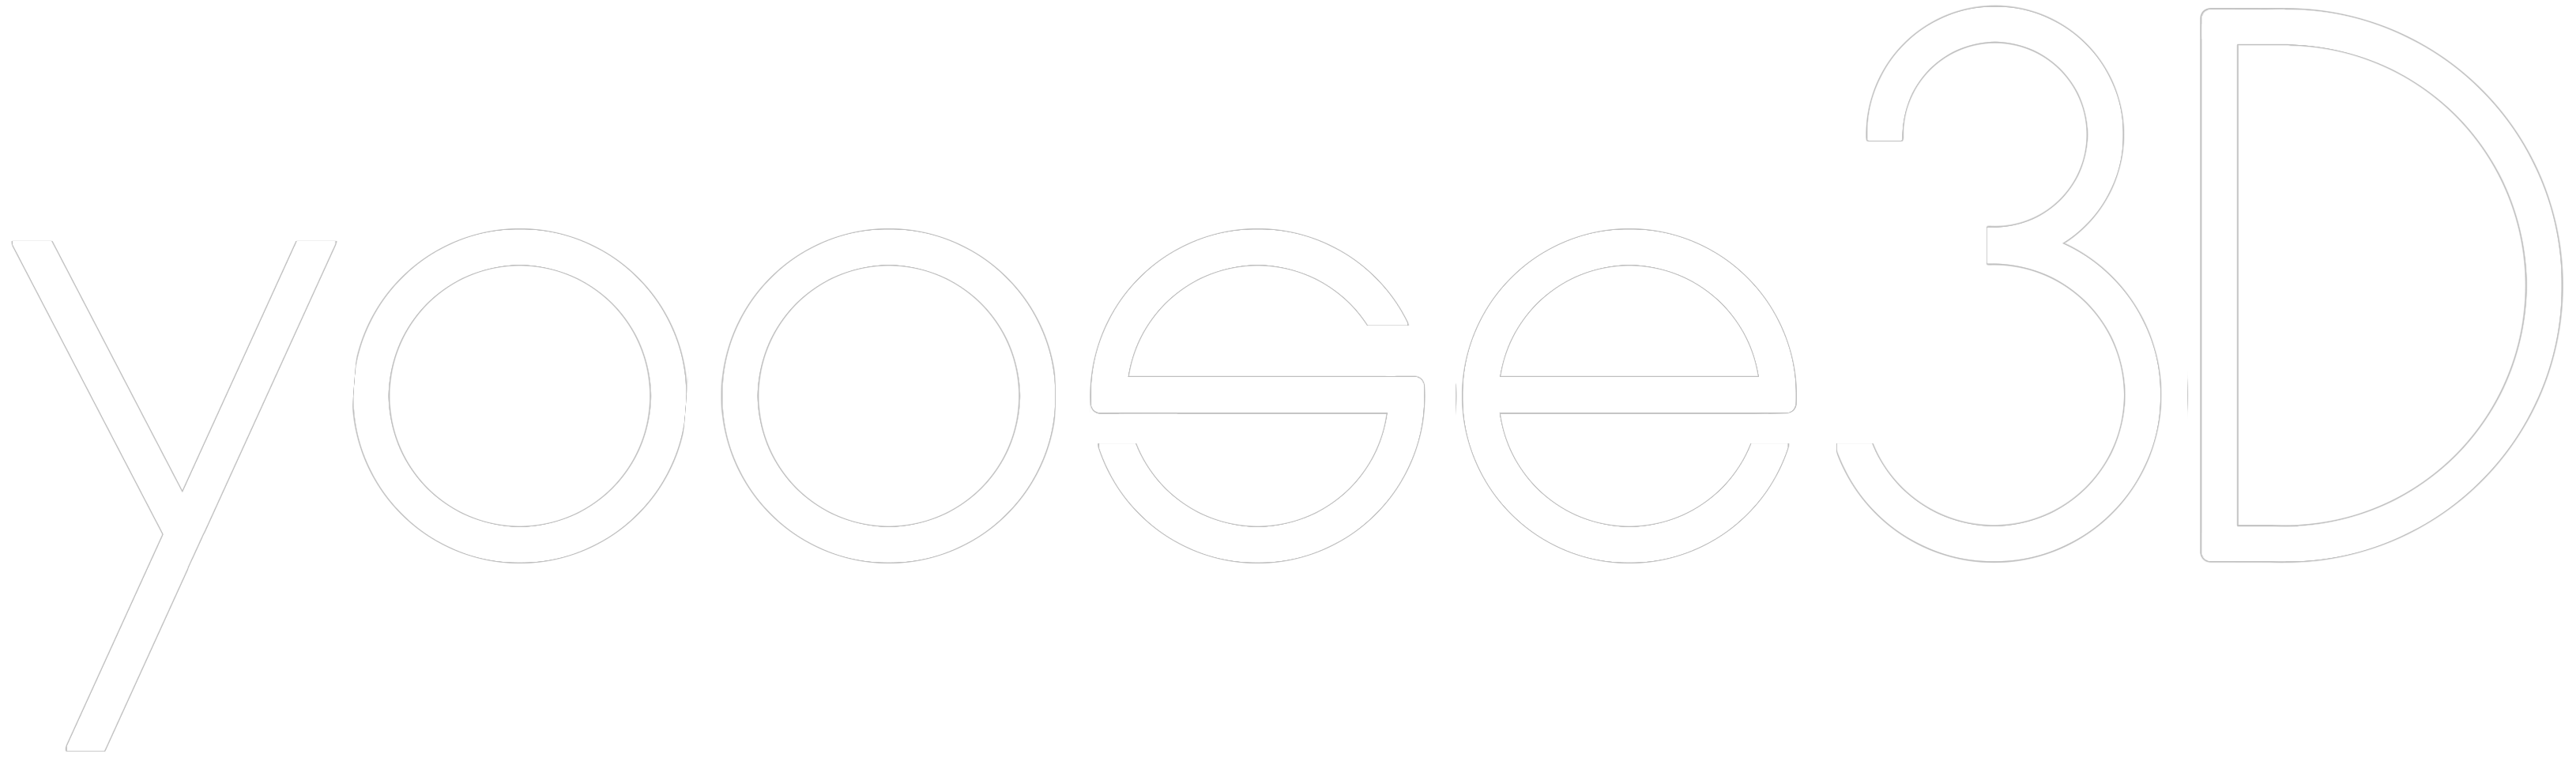 yoose3D logo